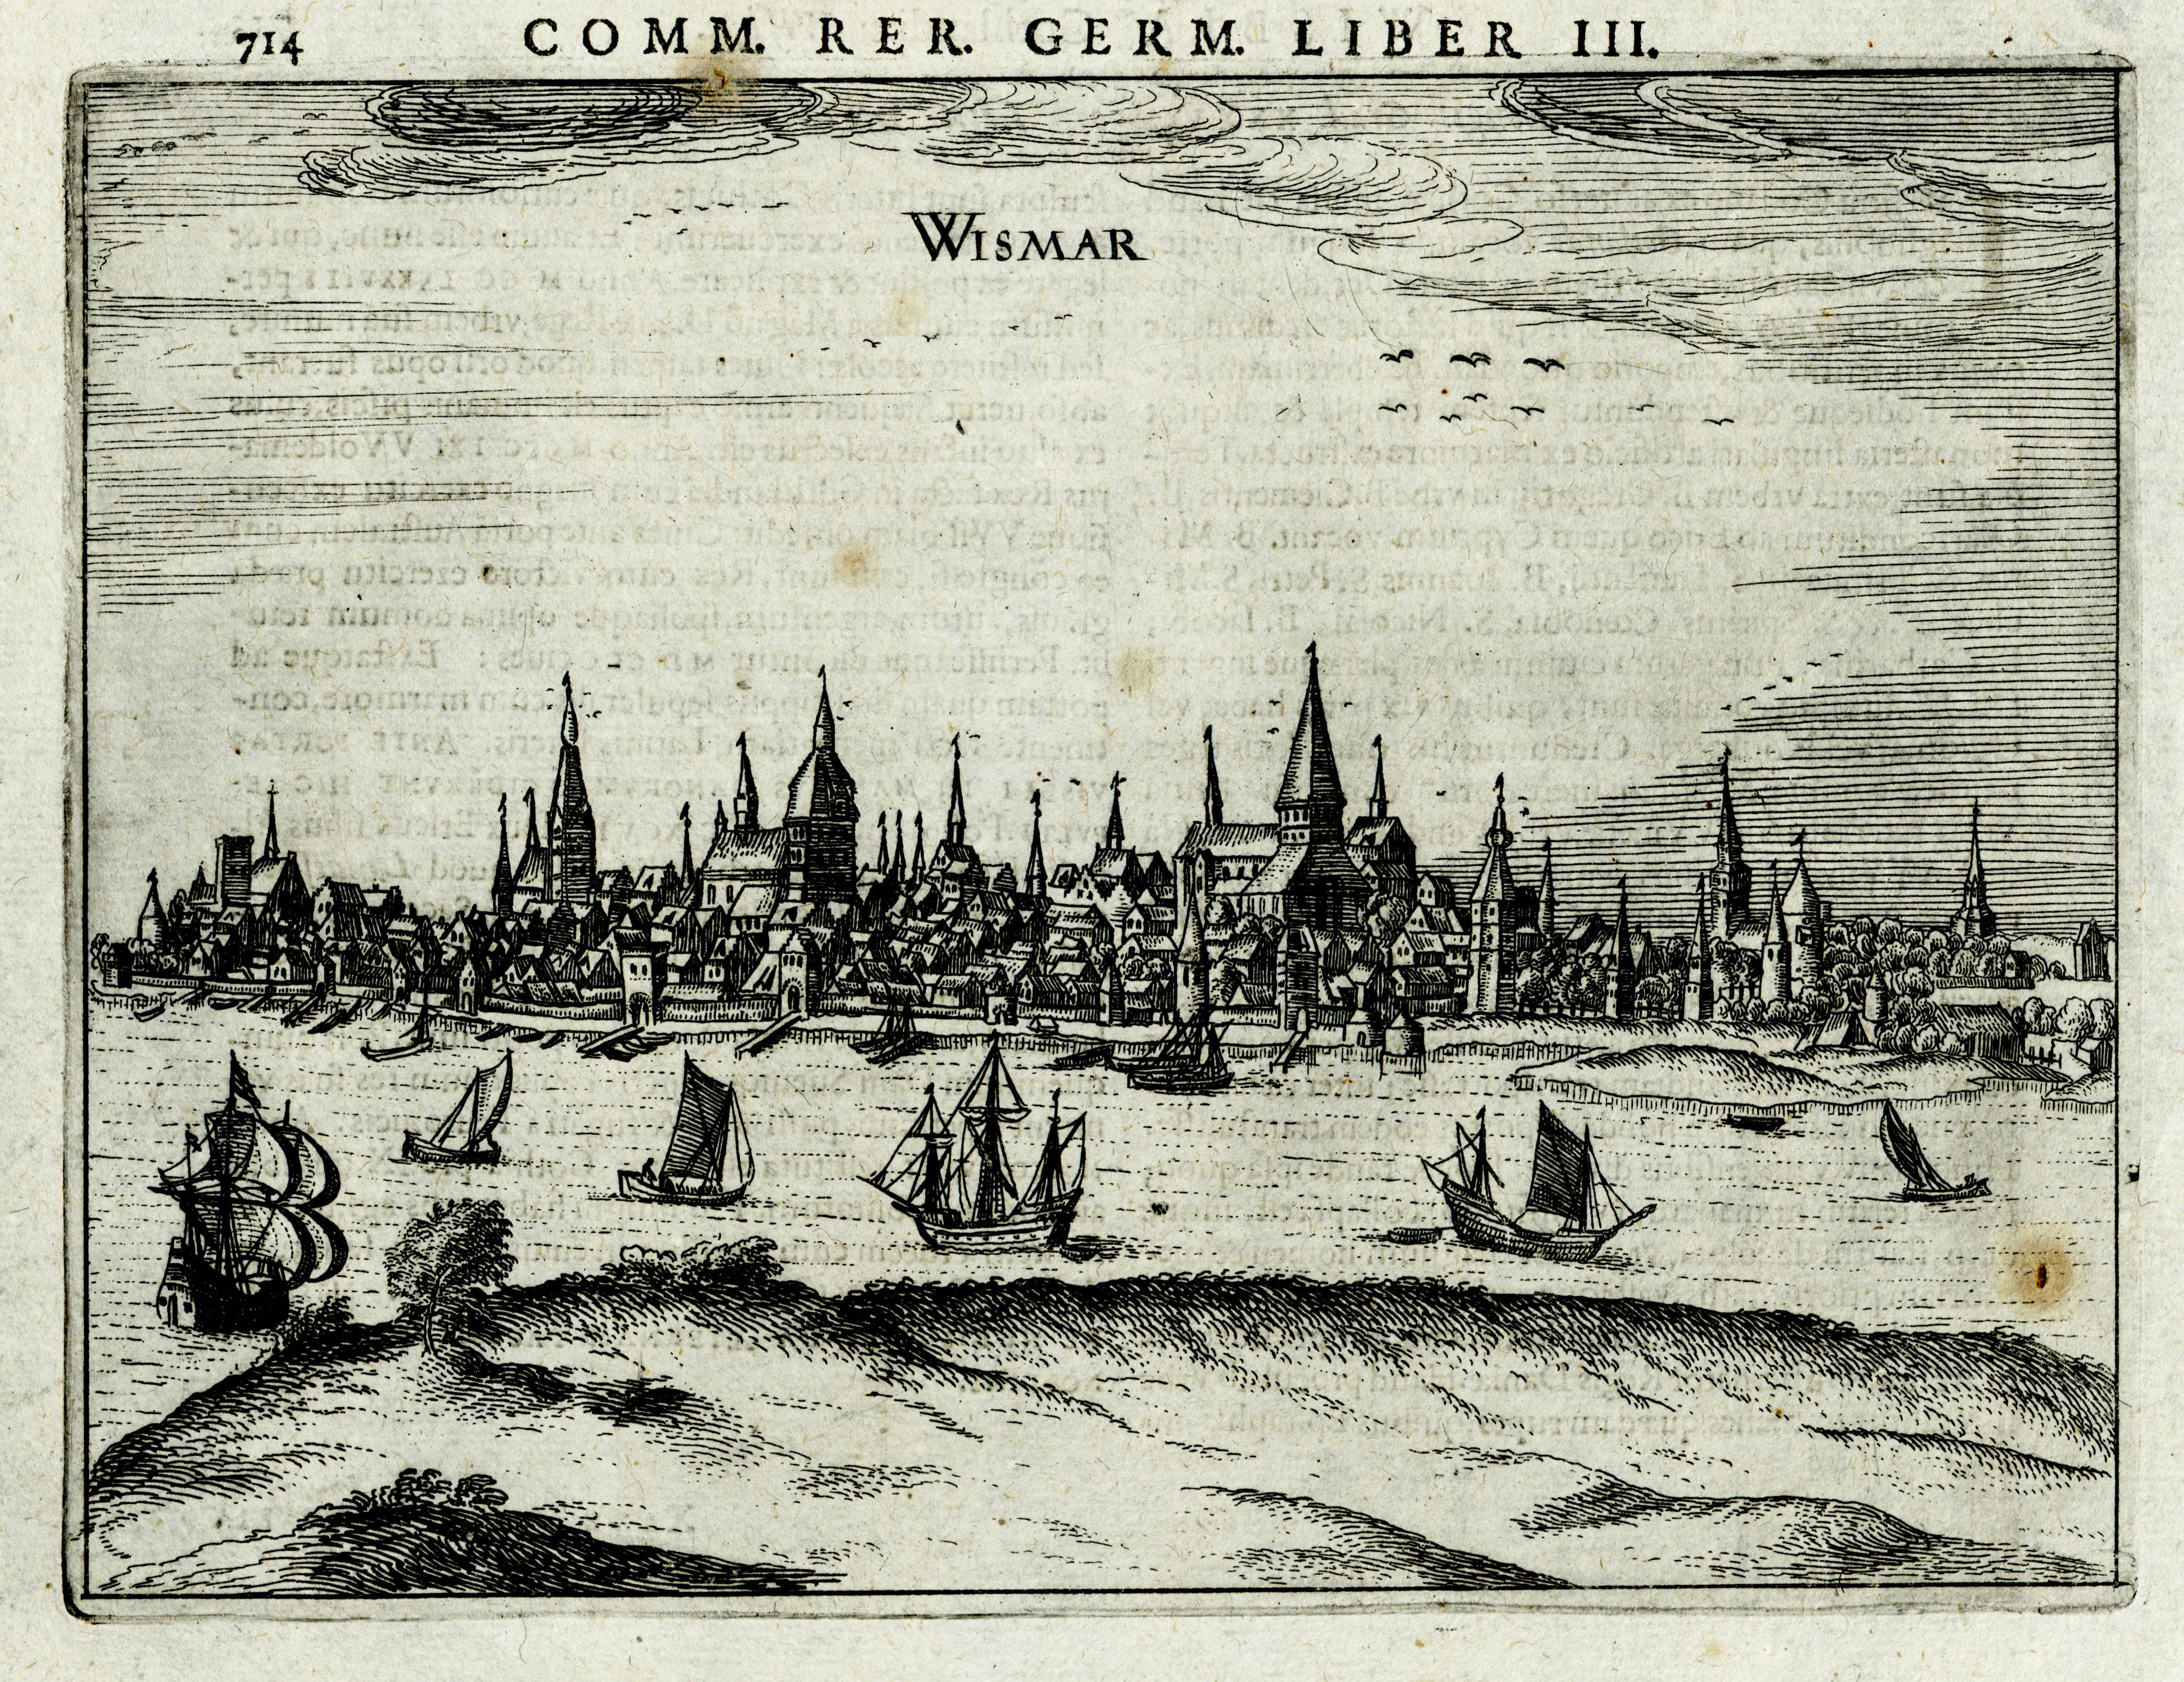 Band 3 der Chronik „Commentarii rerum Germanicarum“ von Petrus Bertius, die erstmals 1616 erscheint, enthält Beschreibungen und Ansichten deutscher Städte.
																		Sowohl Rostock, als auch Wismar haben einen Eintrag erhalten, doch anstelle einer Ansicht von Wismar ist erneut Rostock zu sehen.